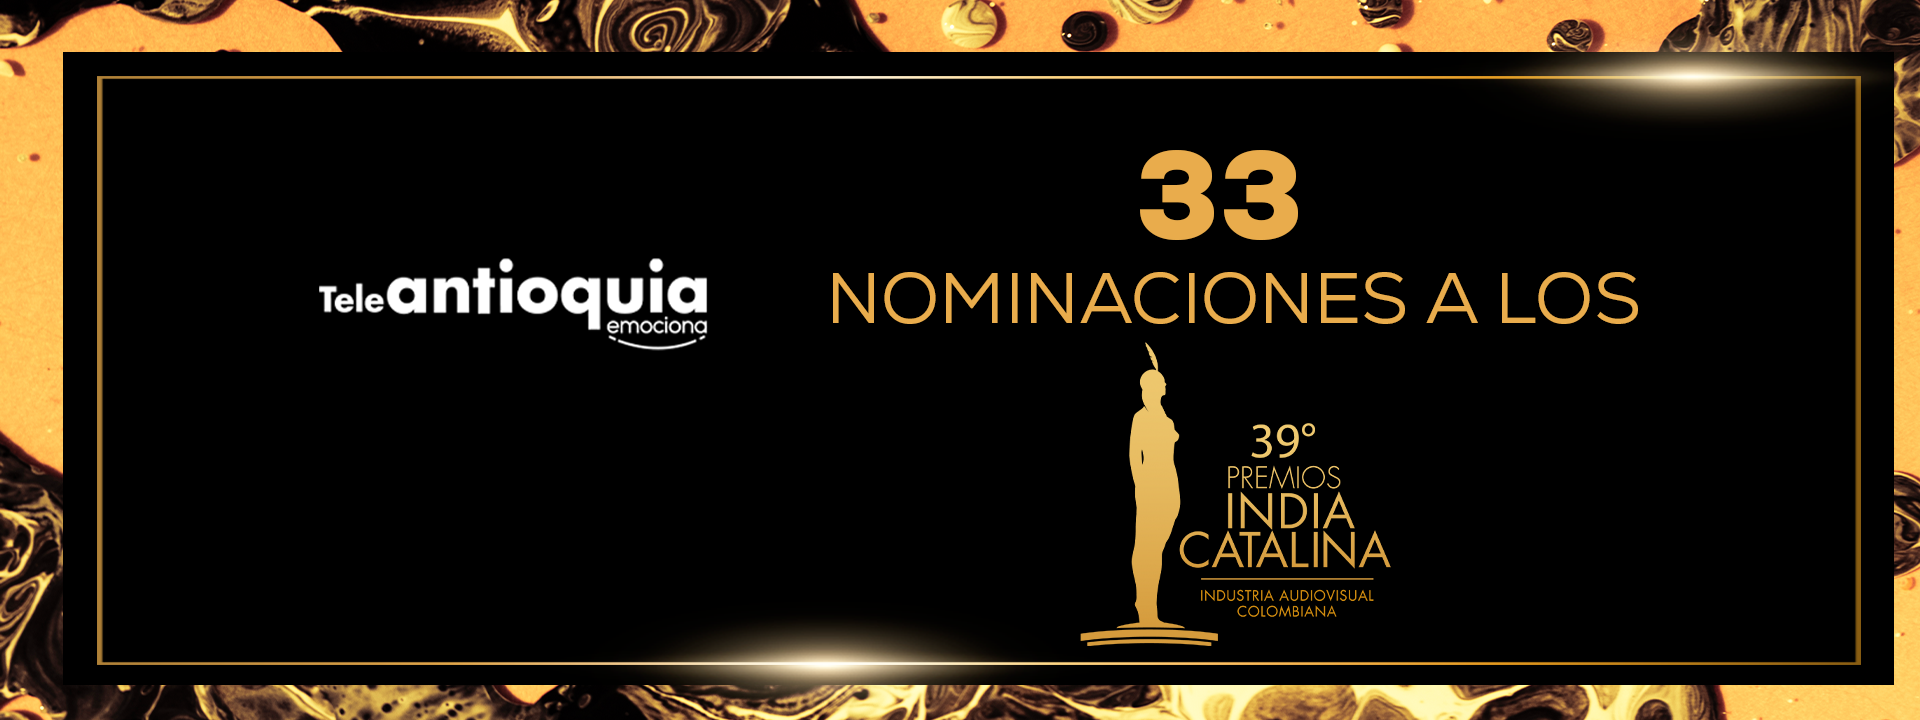 Premios India Catalina 2023: Teleantioquia emociona con 33 nominaciones